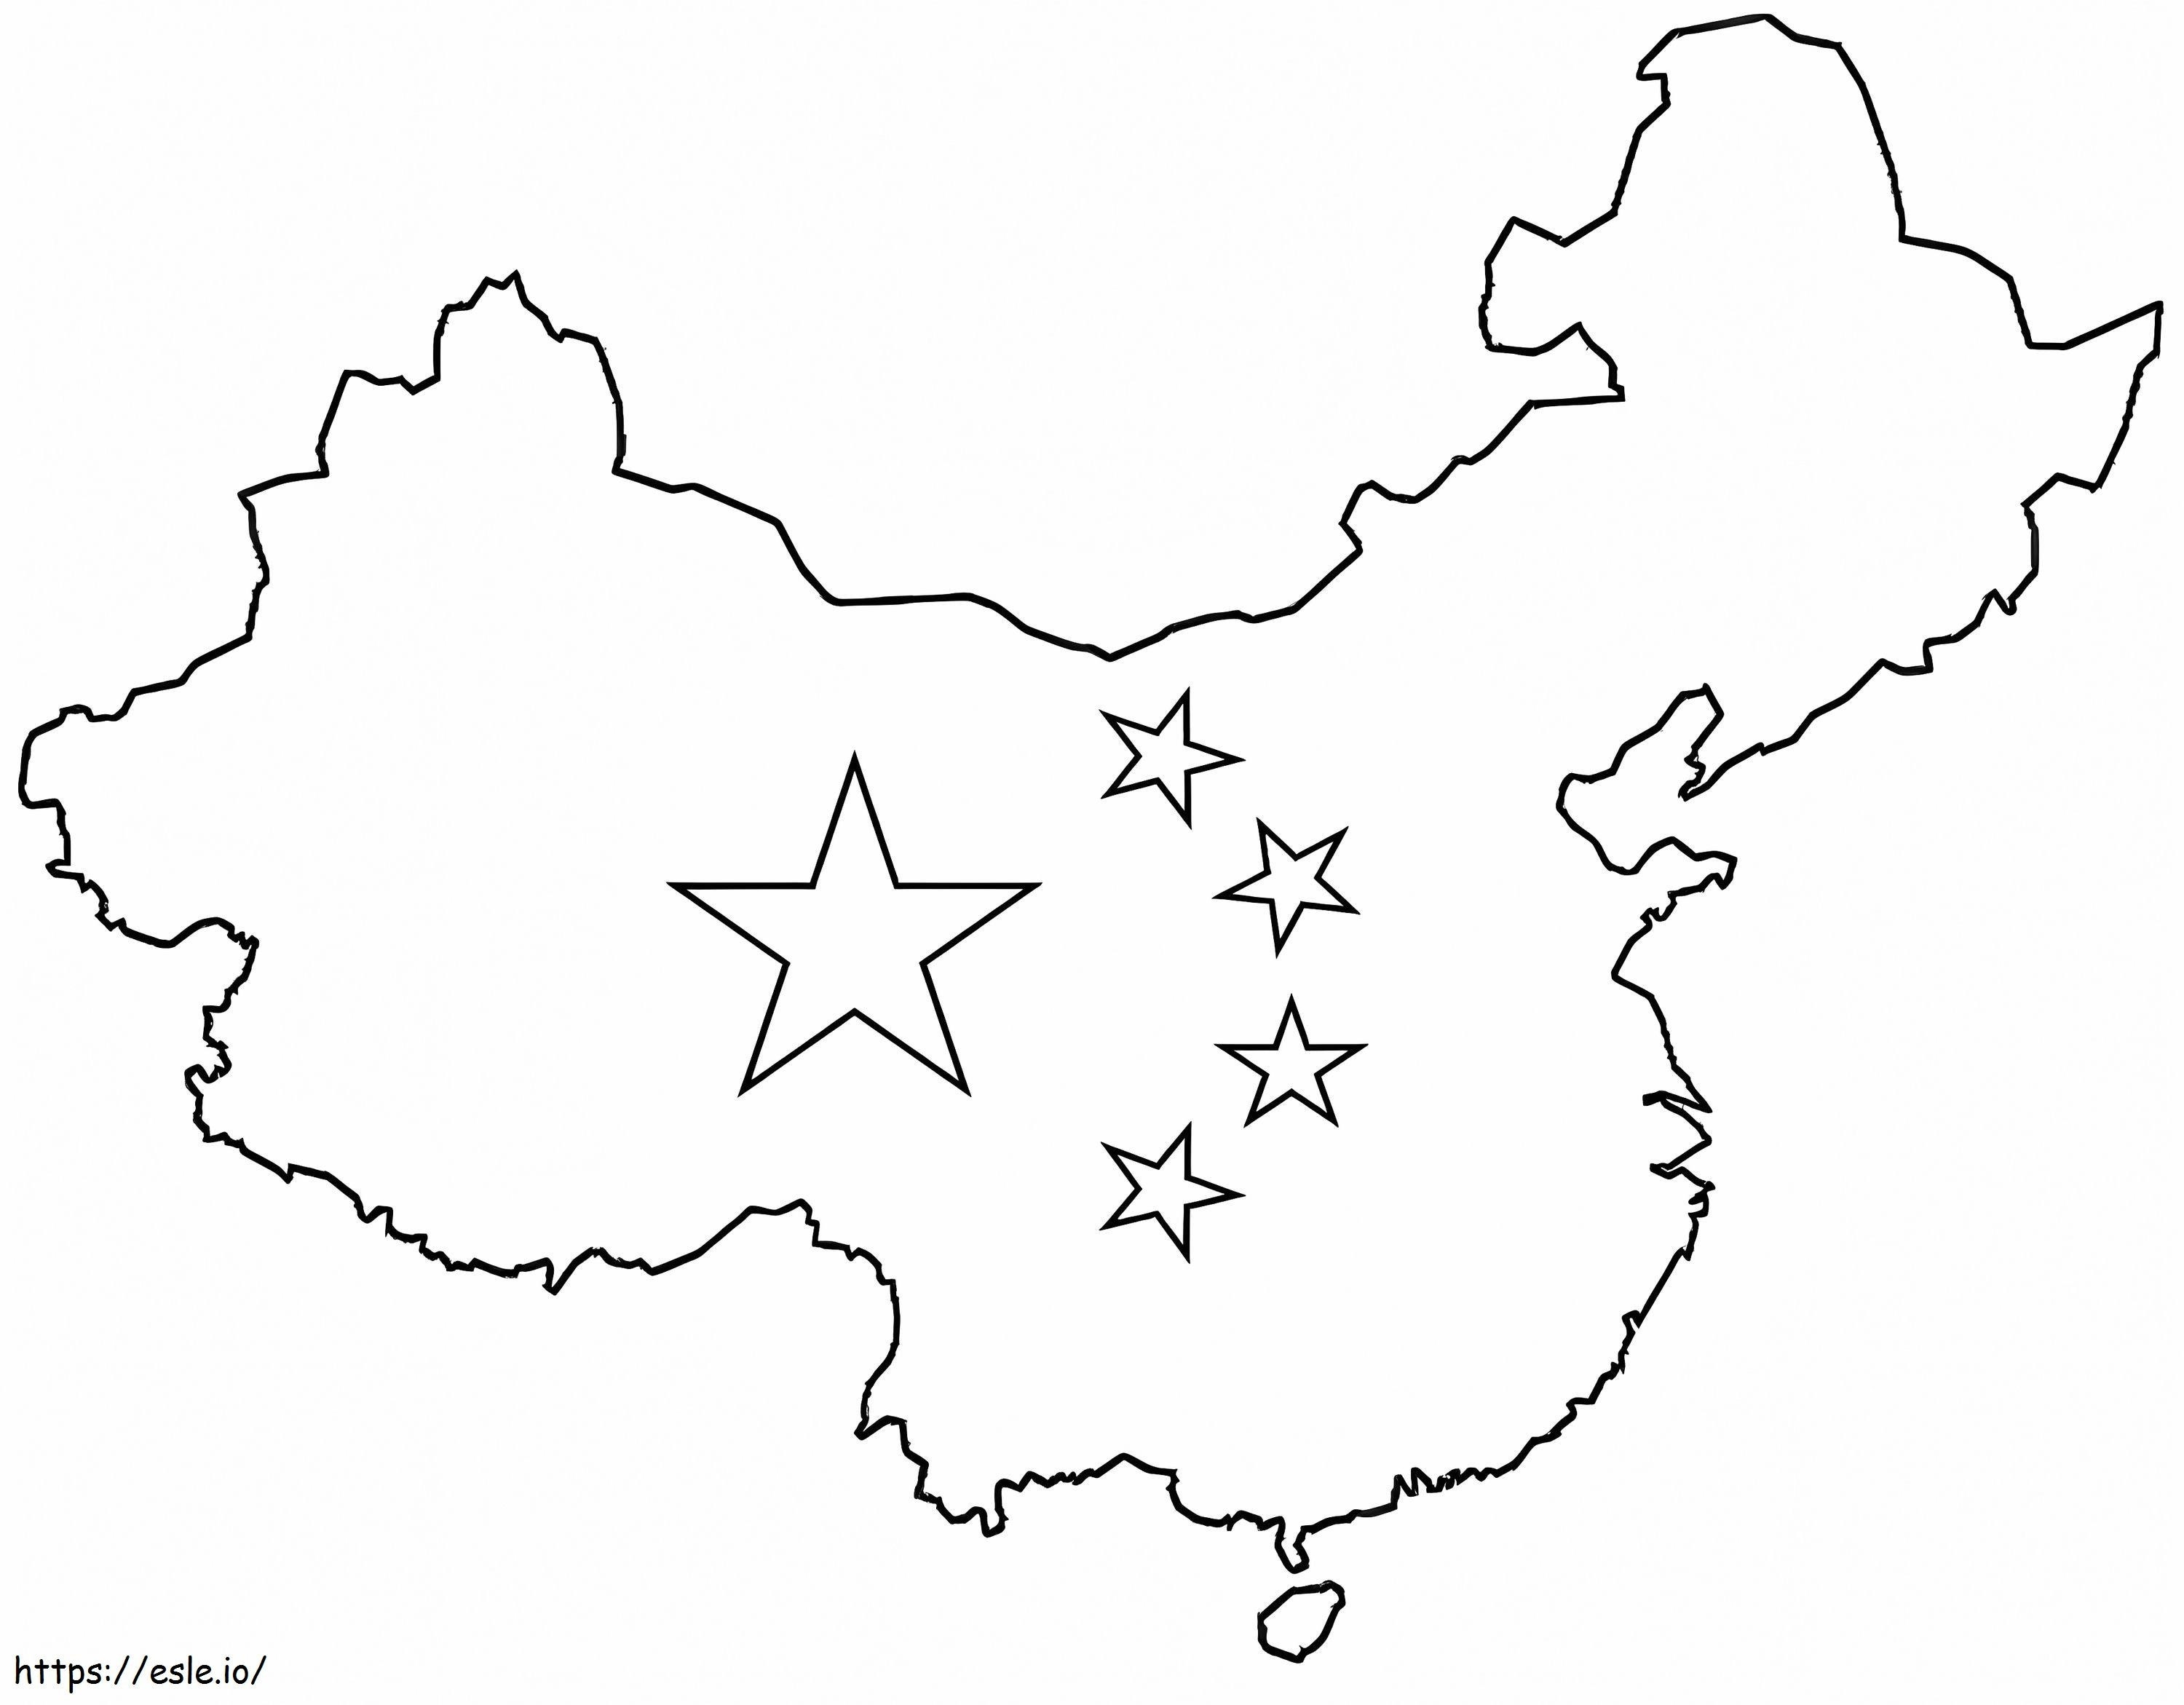 Karte von China 3 ausmalbilder